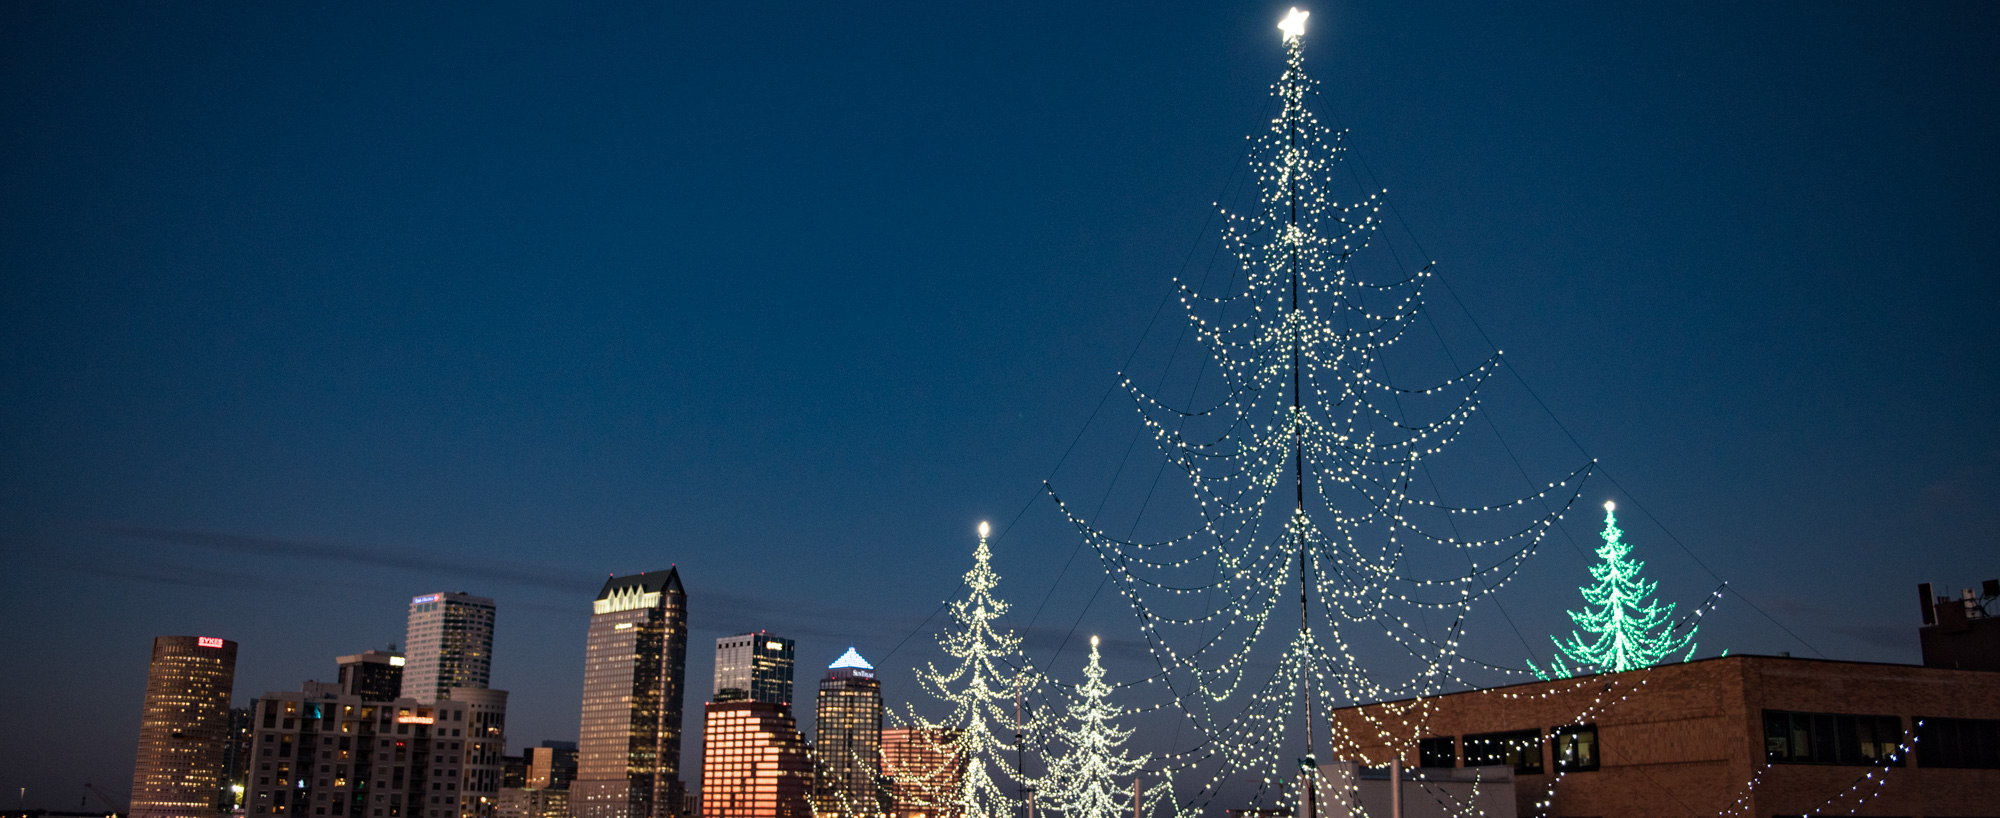 Holiday tree lighting